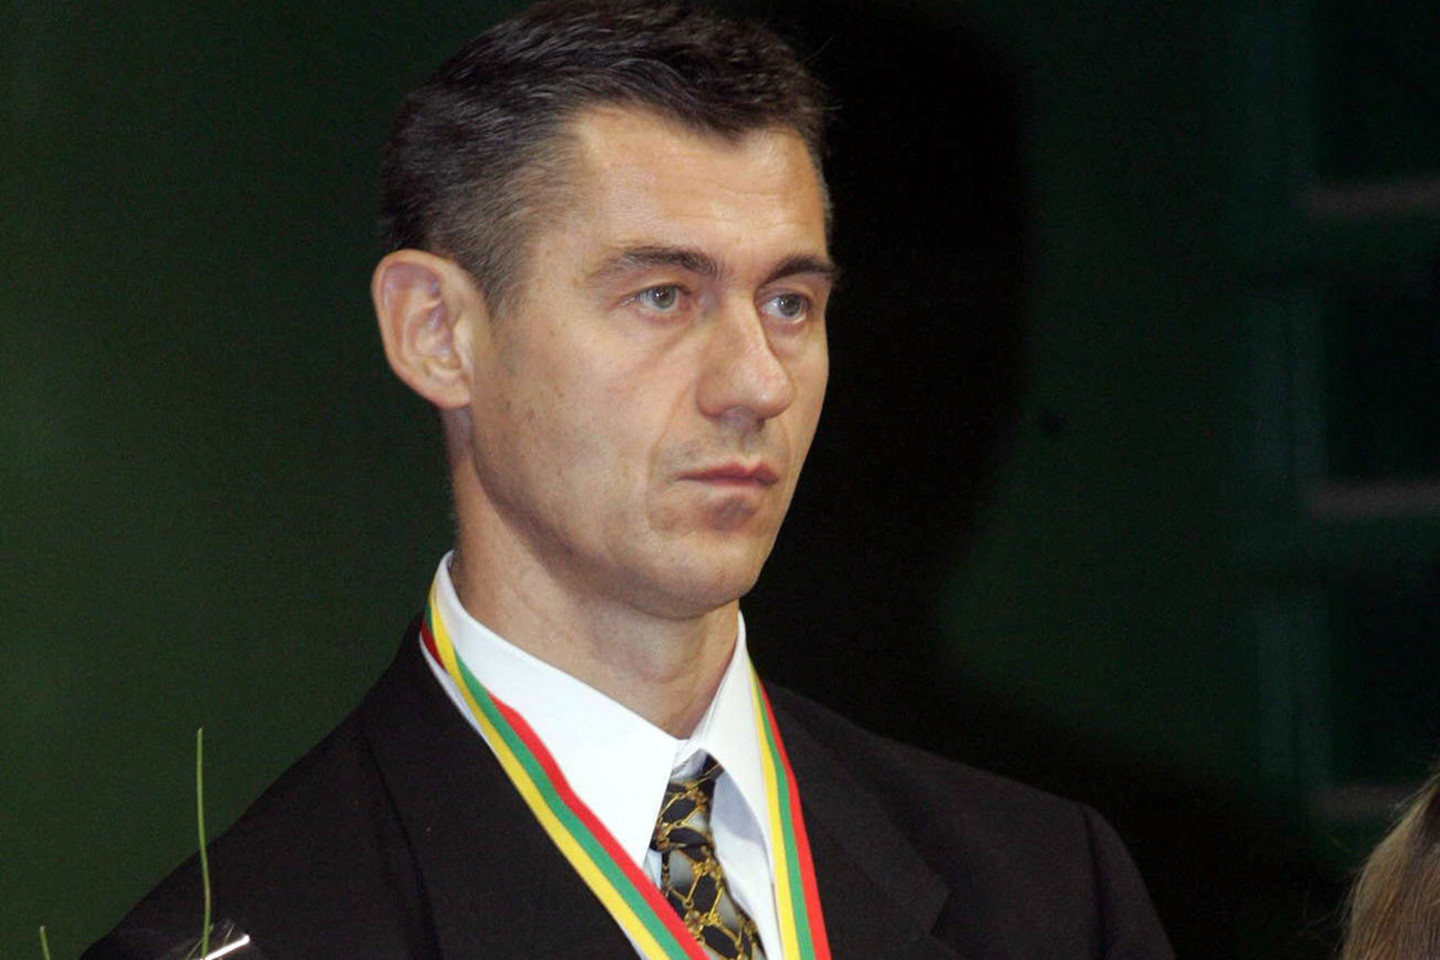 Pirmajam nepriklausomos Lietuvos olimpiniam čempionui, disko metikui Romui Ubartui (56 m.) sportinę karjerą mena ne tik įvairūs apdovanojimai, bet ir išsaugotas Barselonos olimpinių žaidynių sportinis kostiumas.